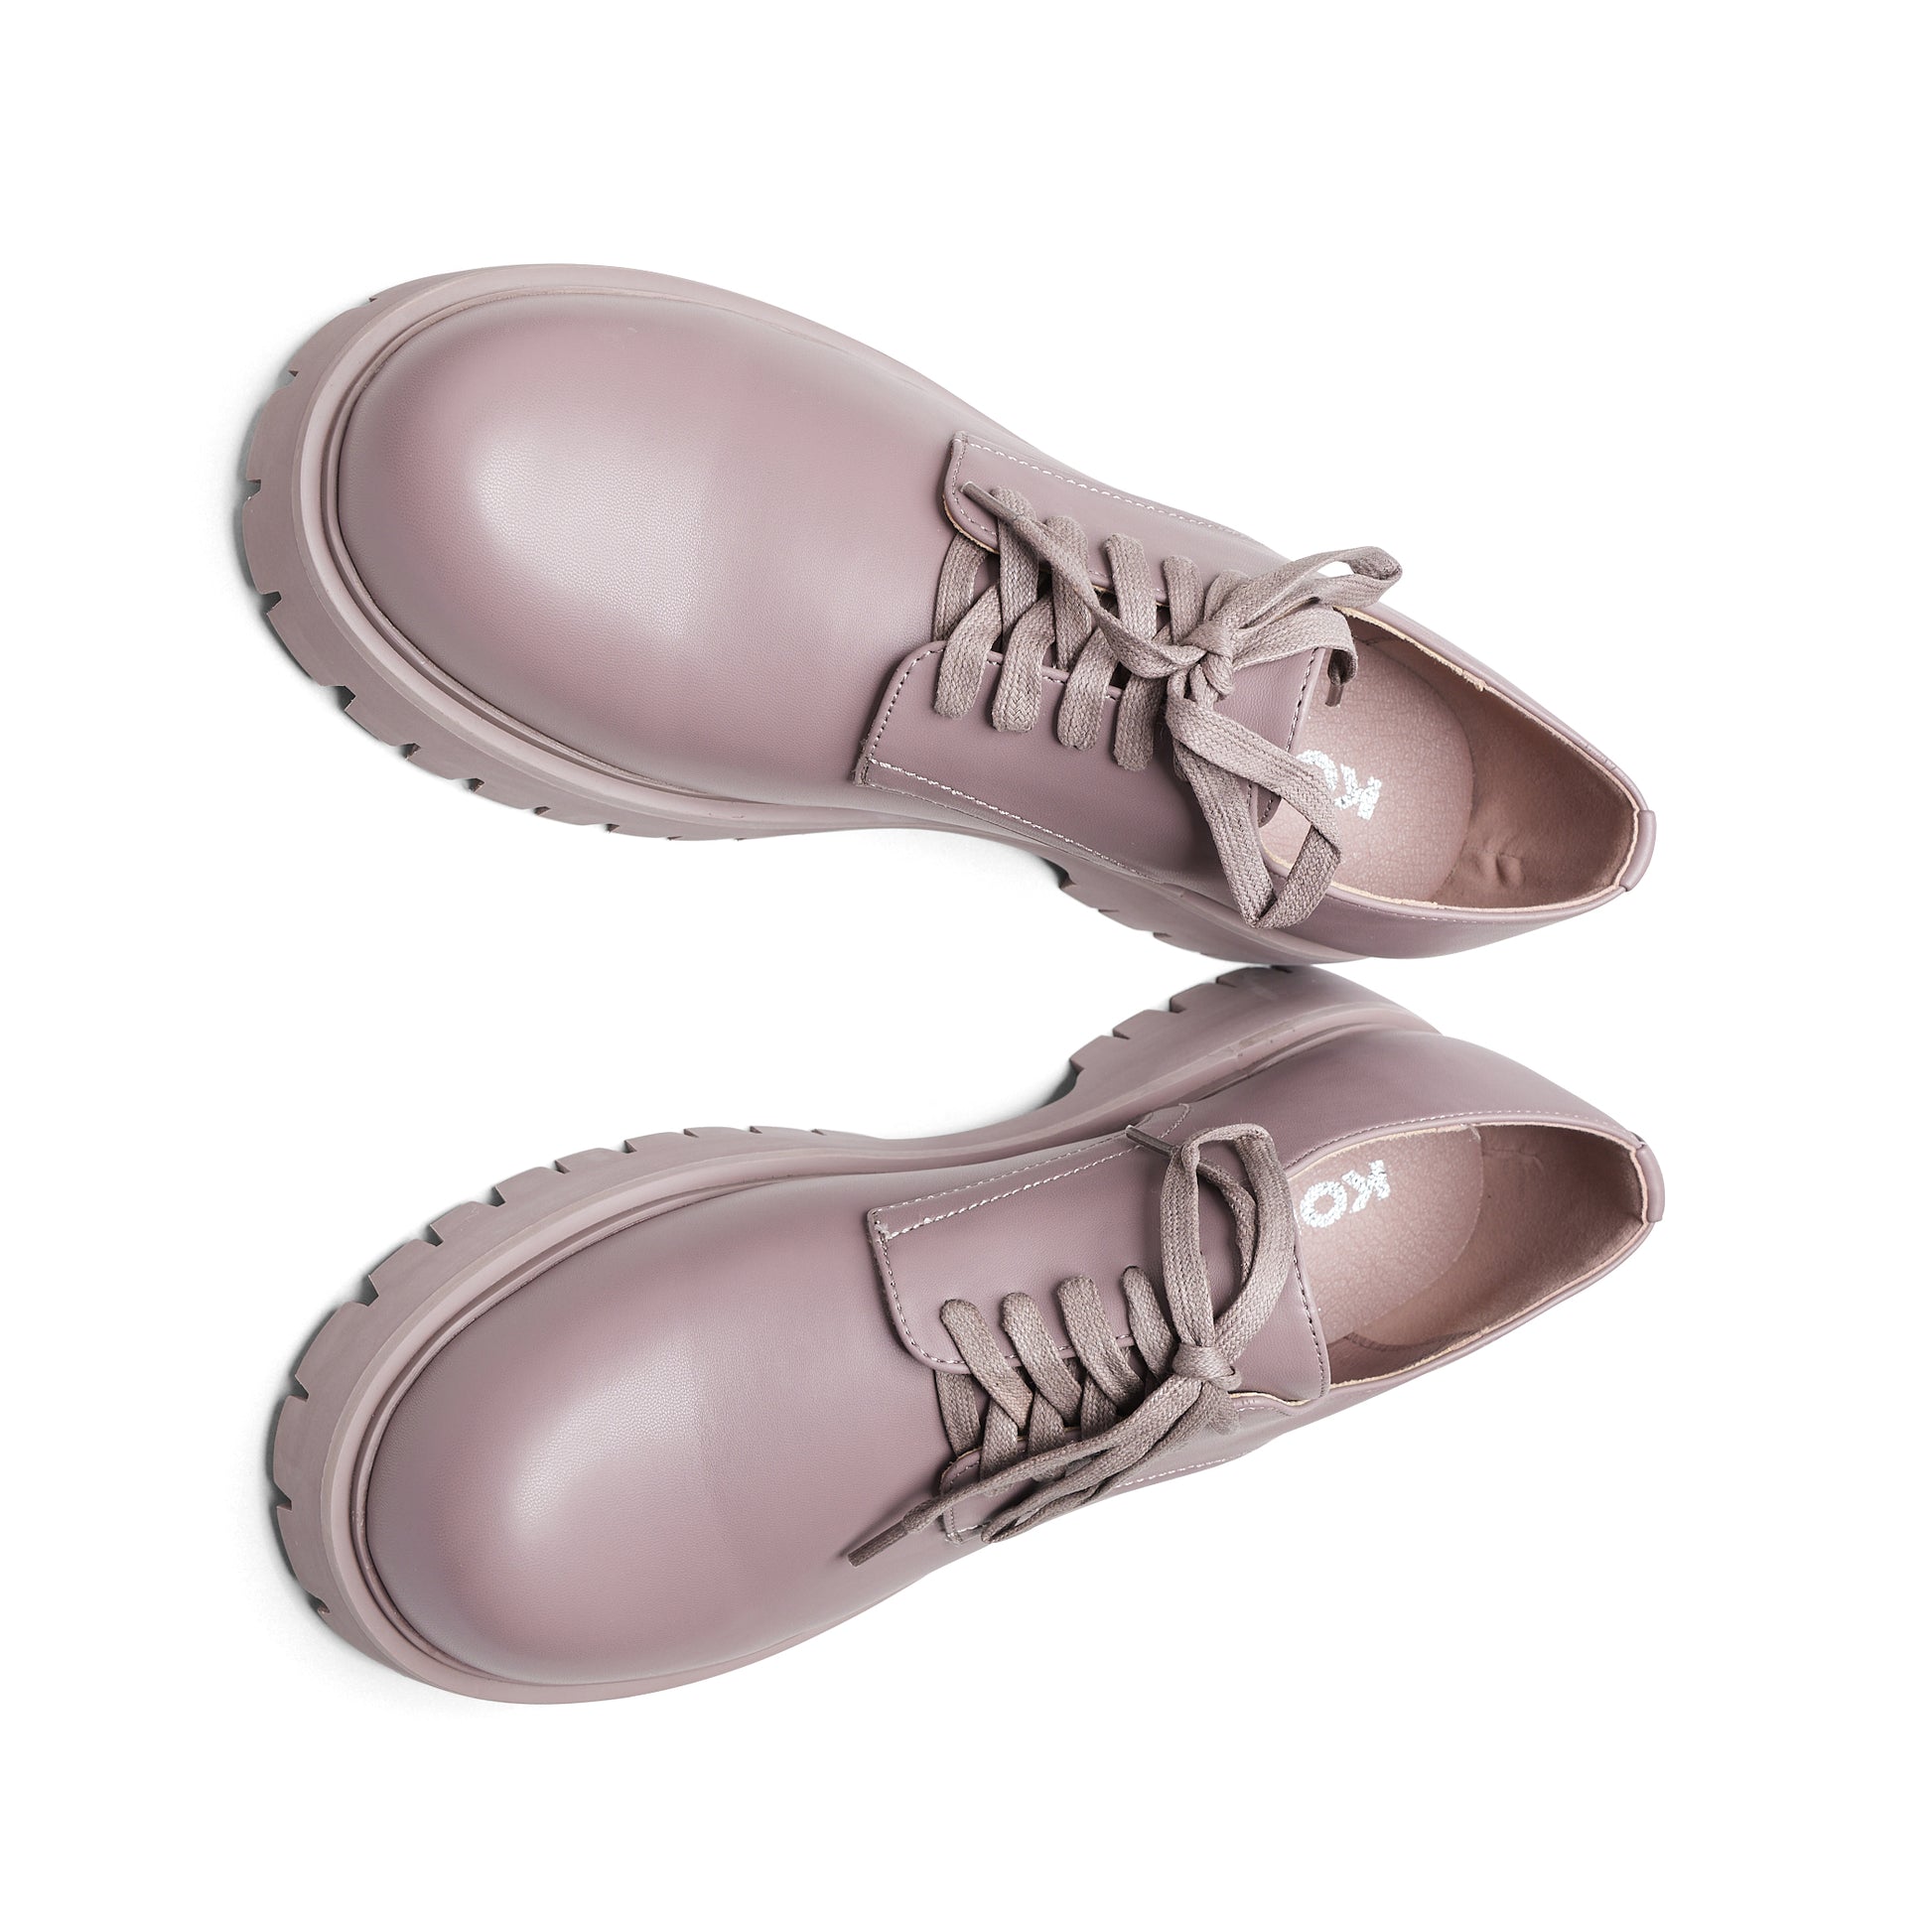 Avian Men's Lace Up Shoes-Mauve - Shoes - KOI Footwear - Purple - Top View